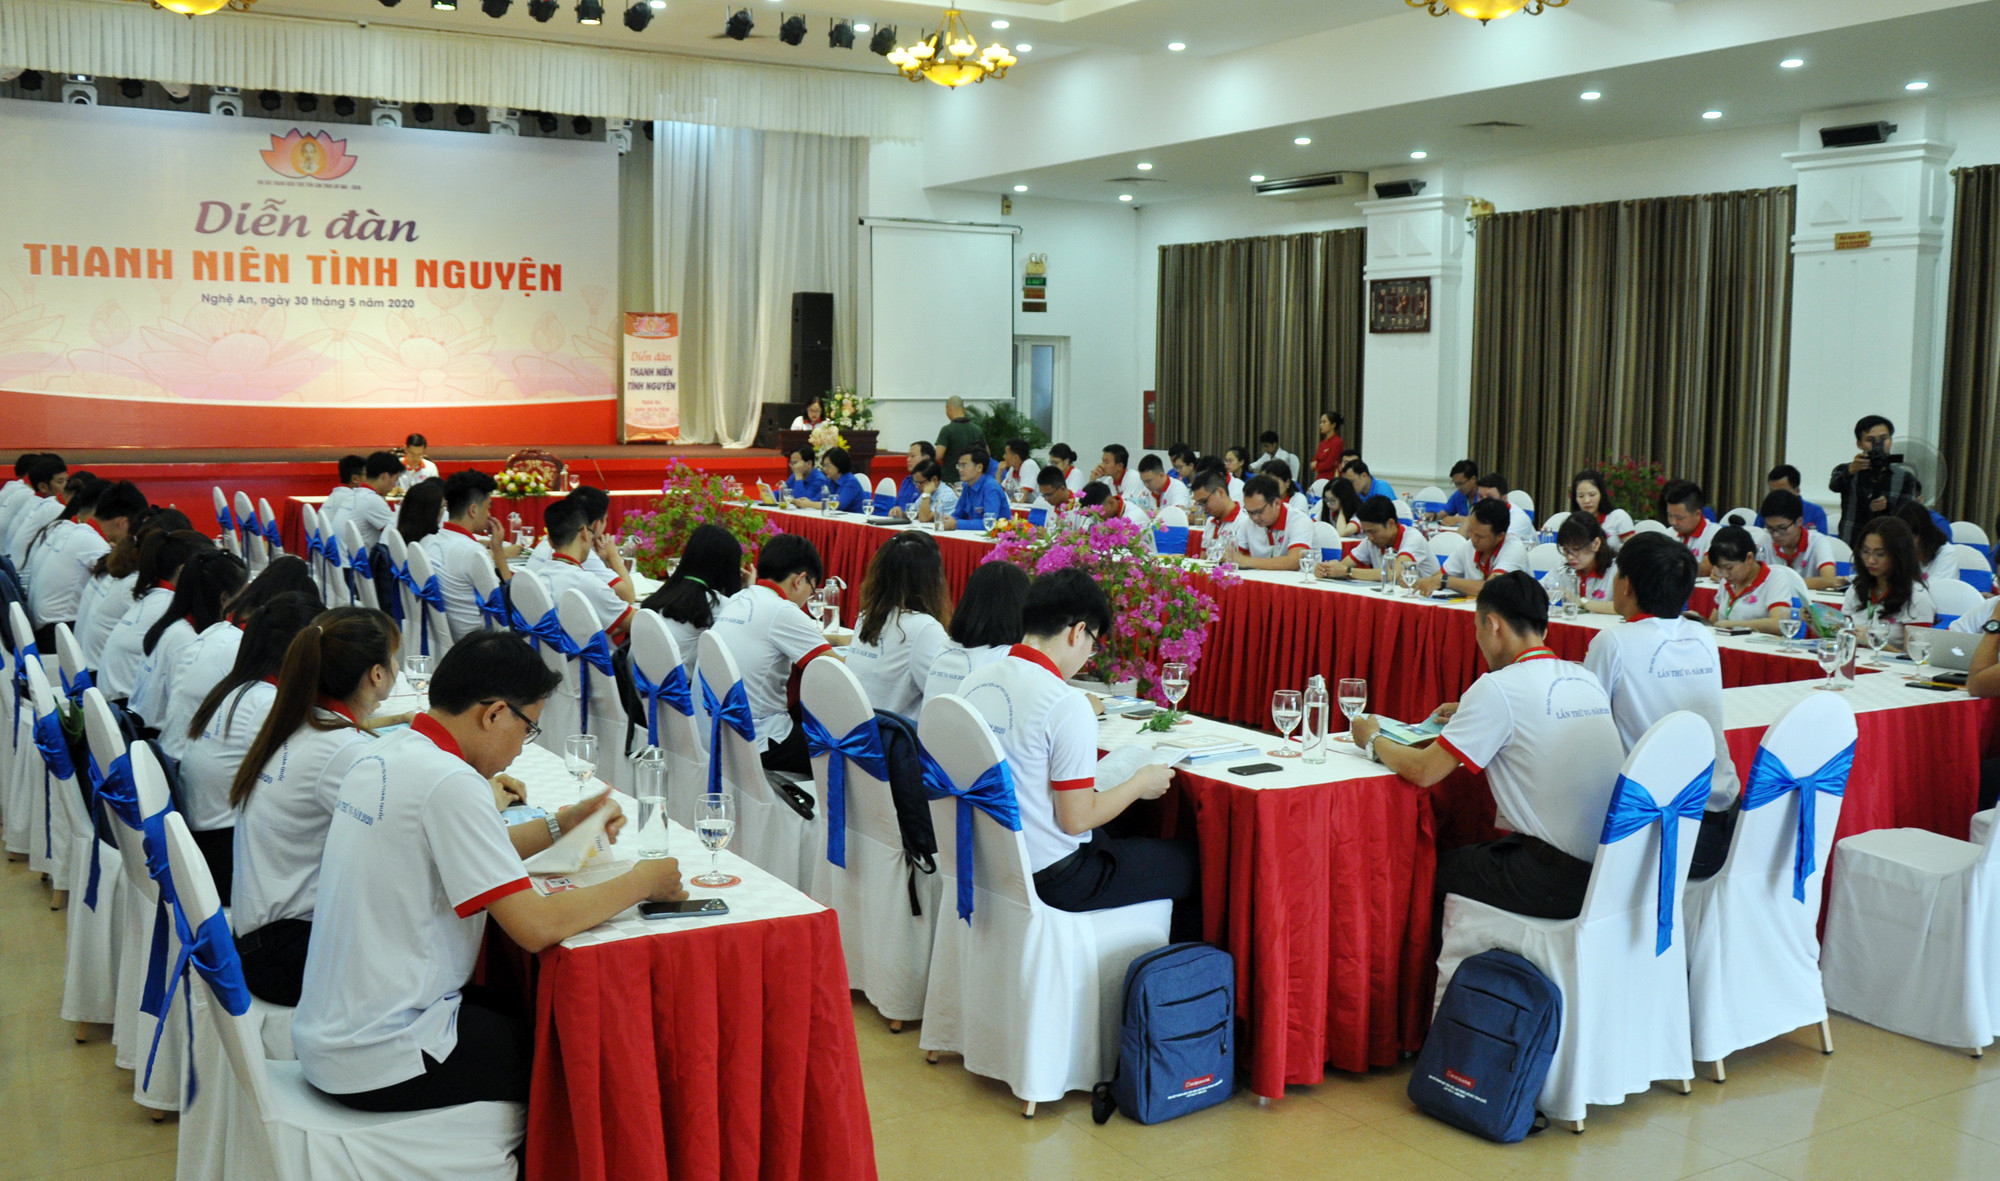 Tham dự diễn đàn có các đồng chí Nguyễn Anh Tuấn – Bí thư Thường thực BCH Trung ương Đoàn TNCS Hồ Chí Minh; đại diện Tỉnh đoàn Nghệ An và 59 đại biểu đến từ các tỉnh, thành trong cả nước. 